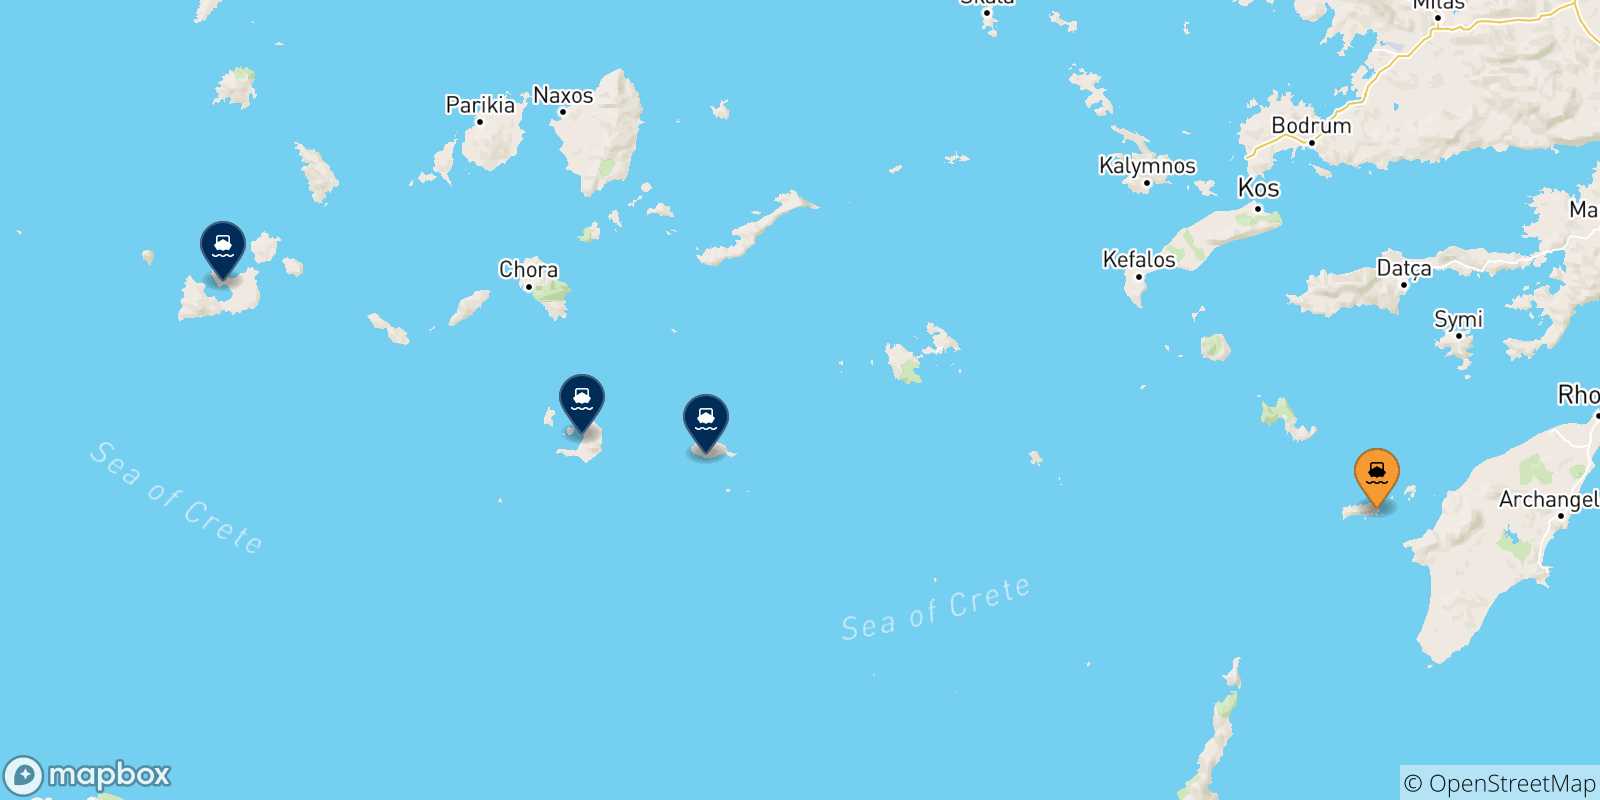 Mappa delle possibili rotte tra Chalki e le Isole Cicladi